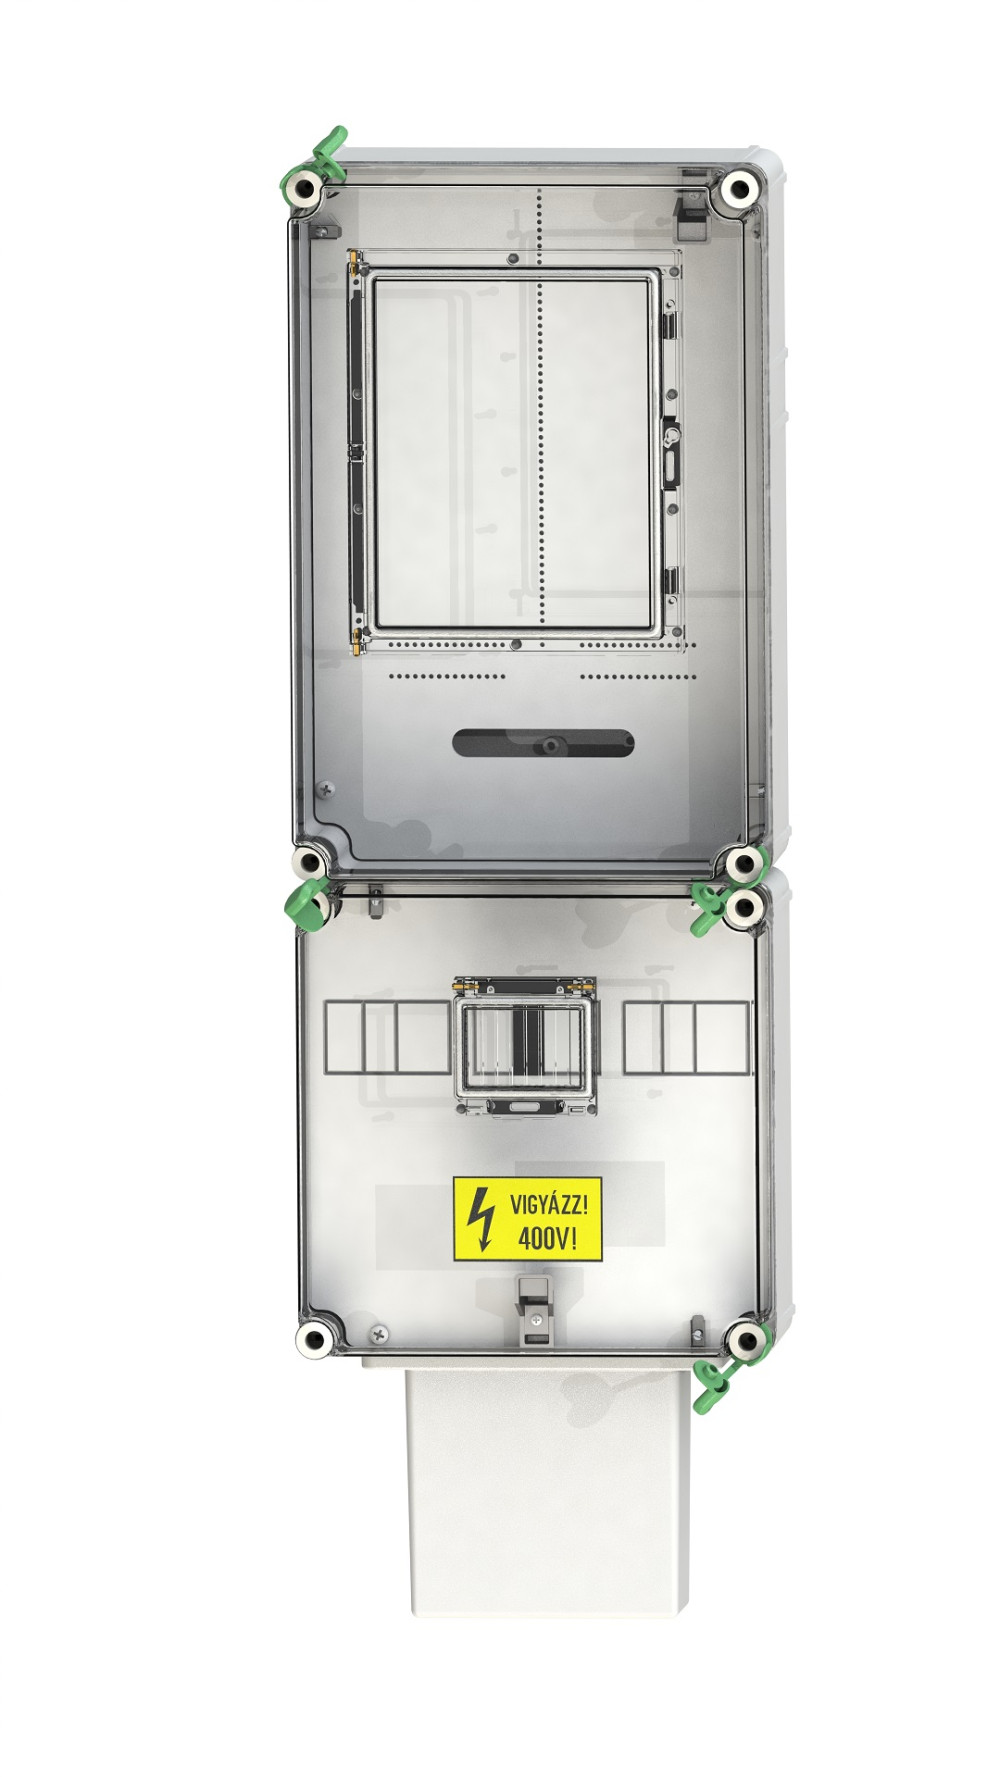 PVT 3075 Fm-K fogyasztásmérő szekrény, 1 vagy 3 fázisú mérő számára, földkábeles csatlakozás, 80A mindennapszaki